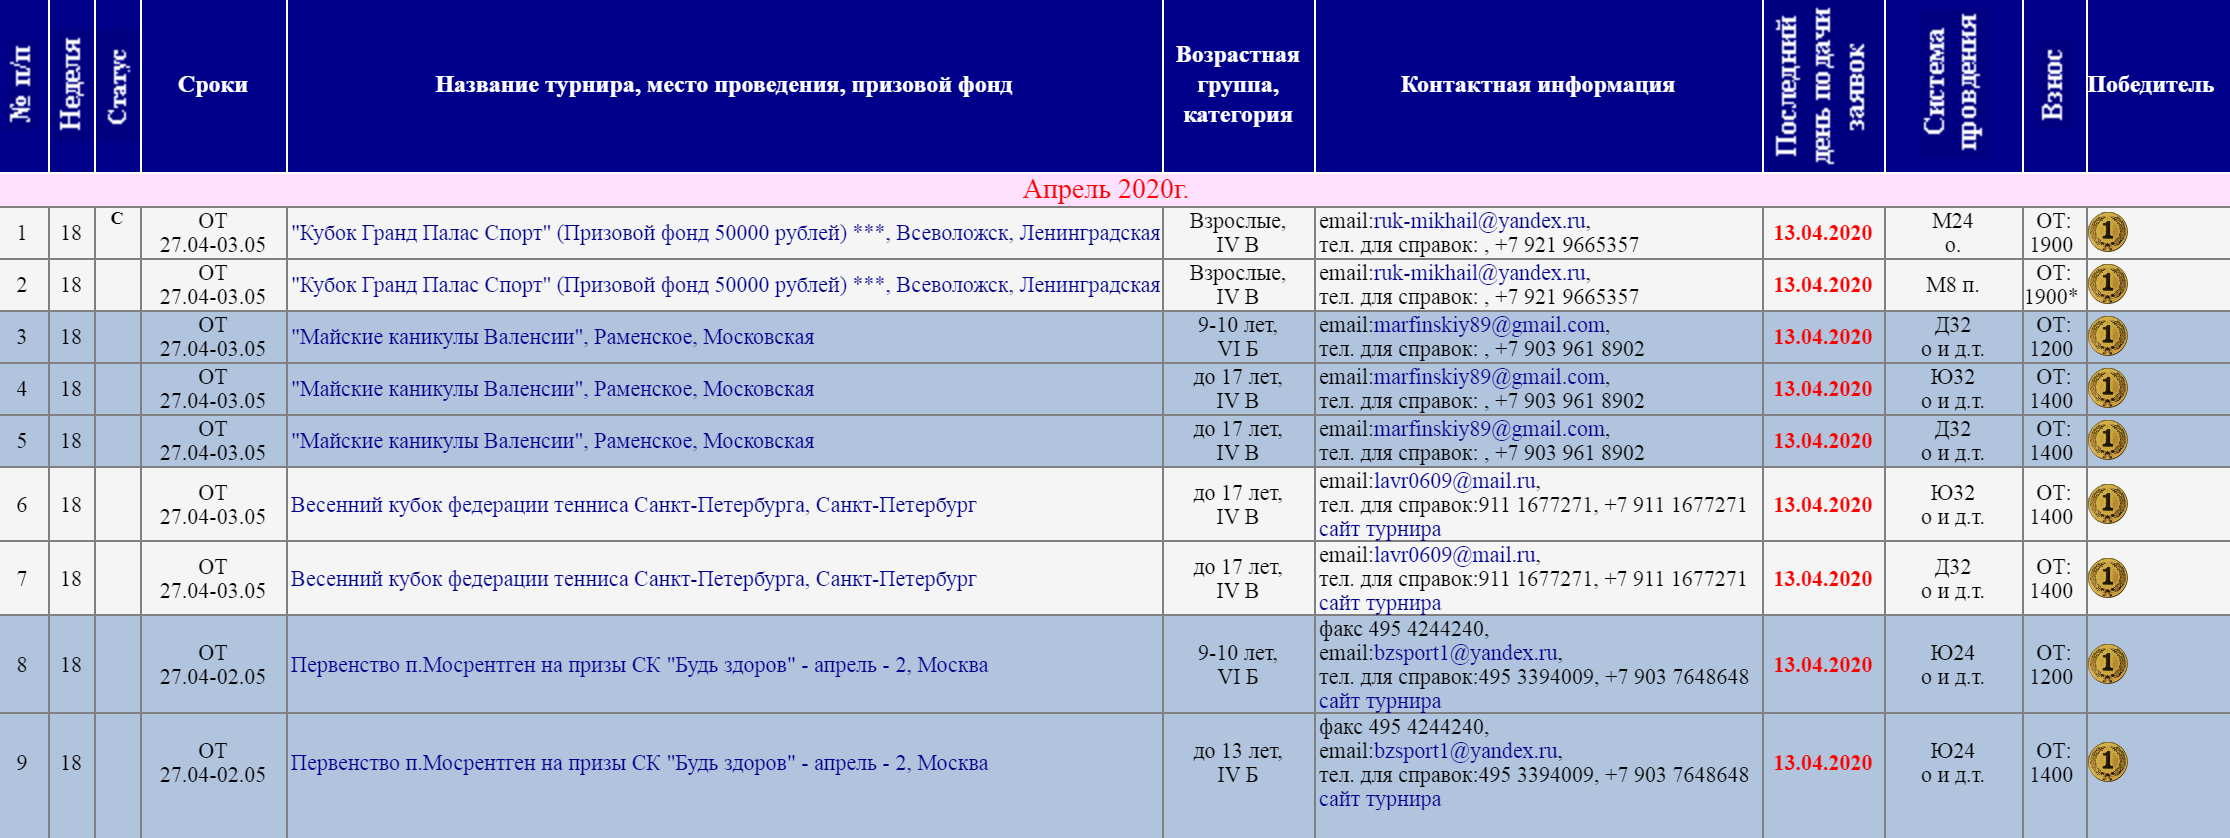 На сайте Федерации тенниса России есть список всех ближайших турниров. Там указывают сумму сборов и победителя, когда турнир закончится